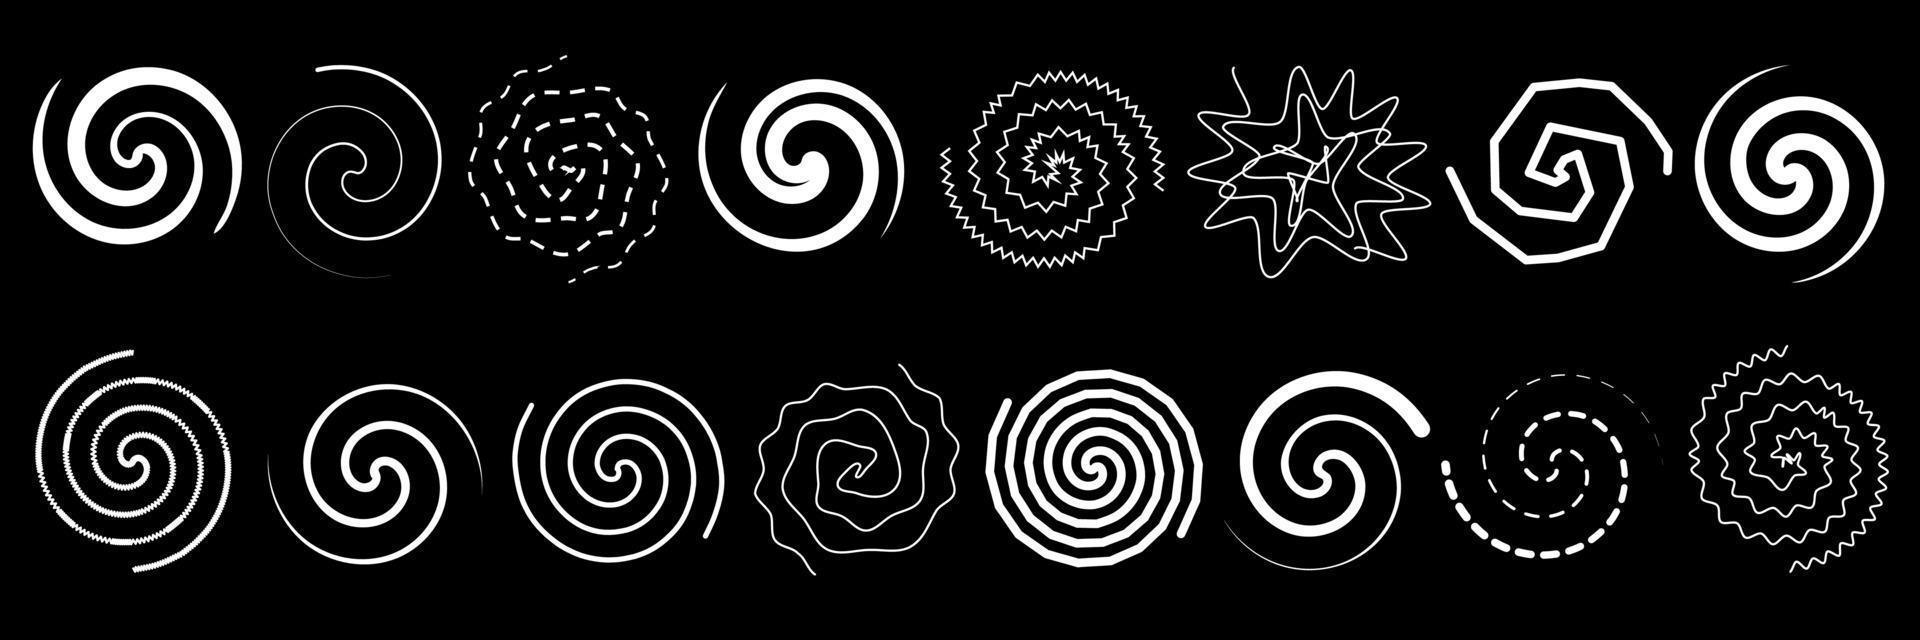 reeks van abstract kronkels en spiralen. vector illustratie van lijnen gedraaid in cirkel. tekening van tekens van ronde wervelingen en golvend wervelingen.